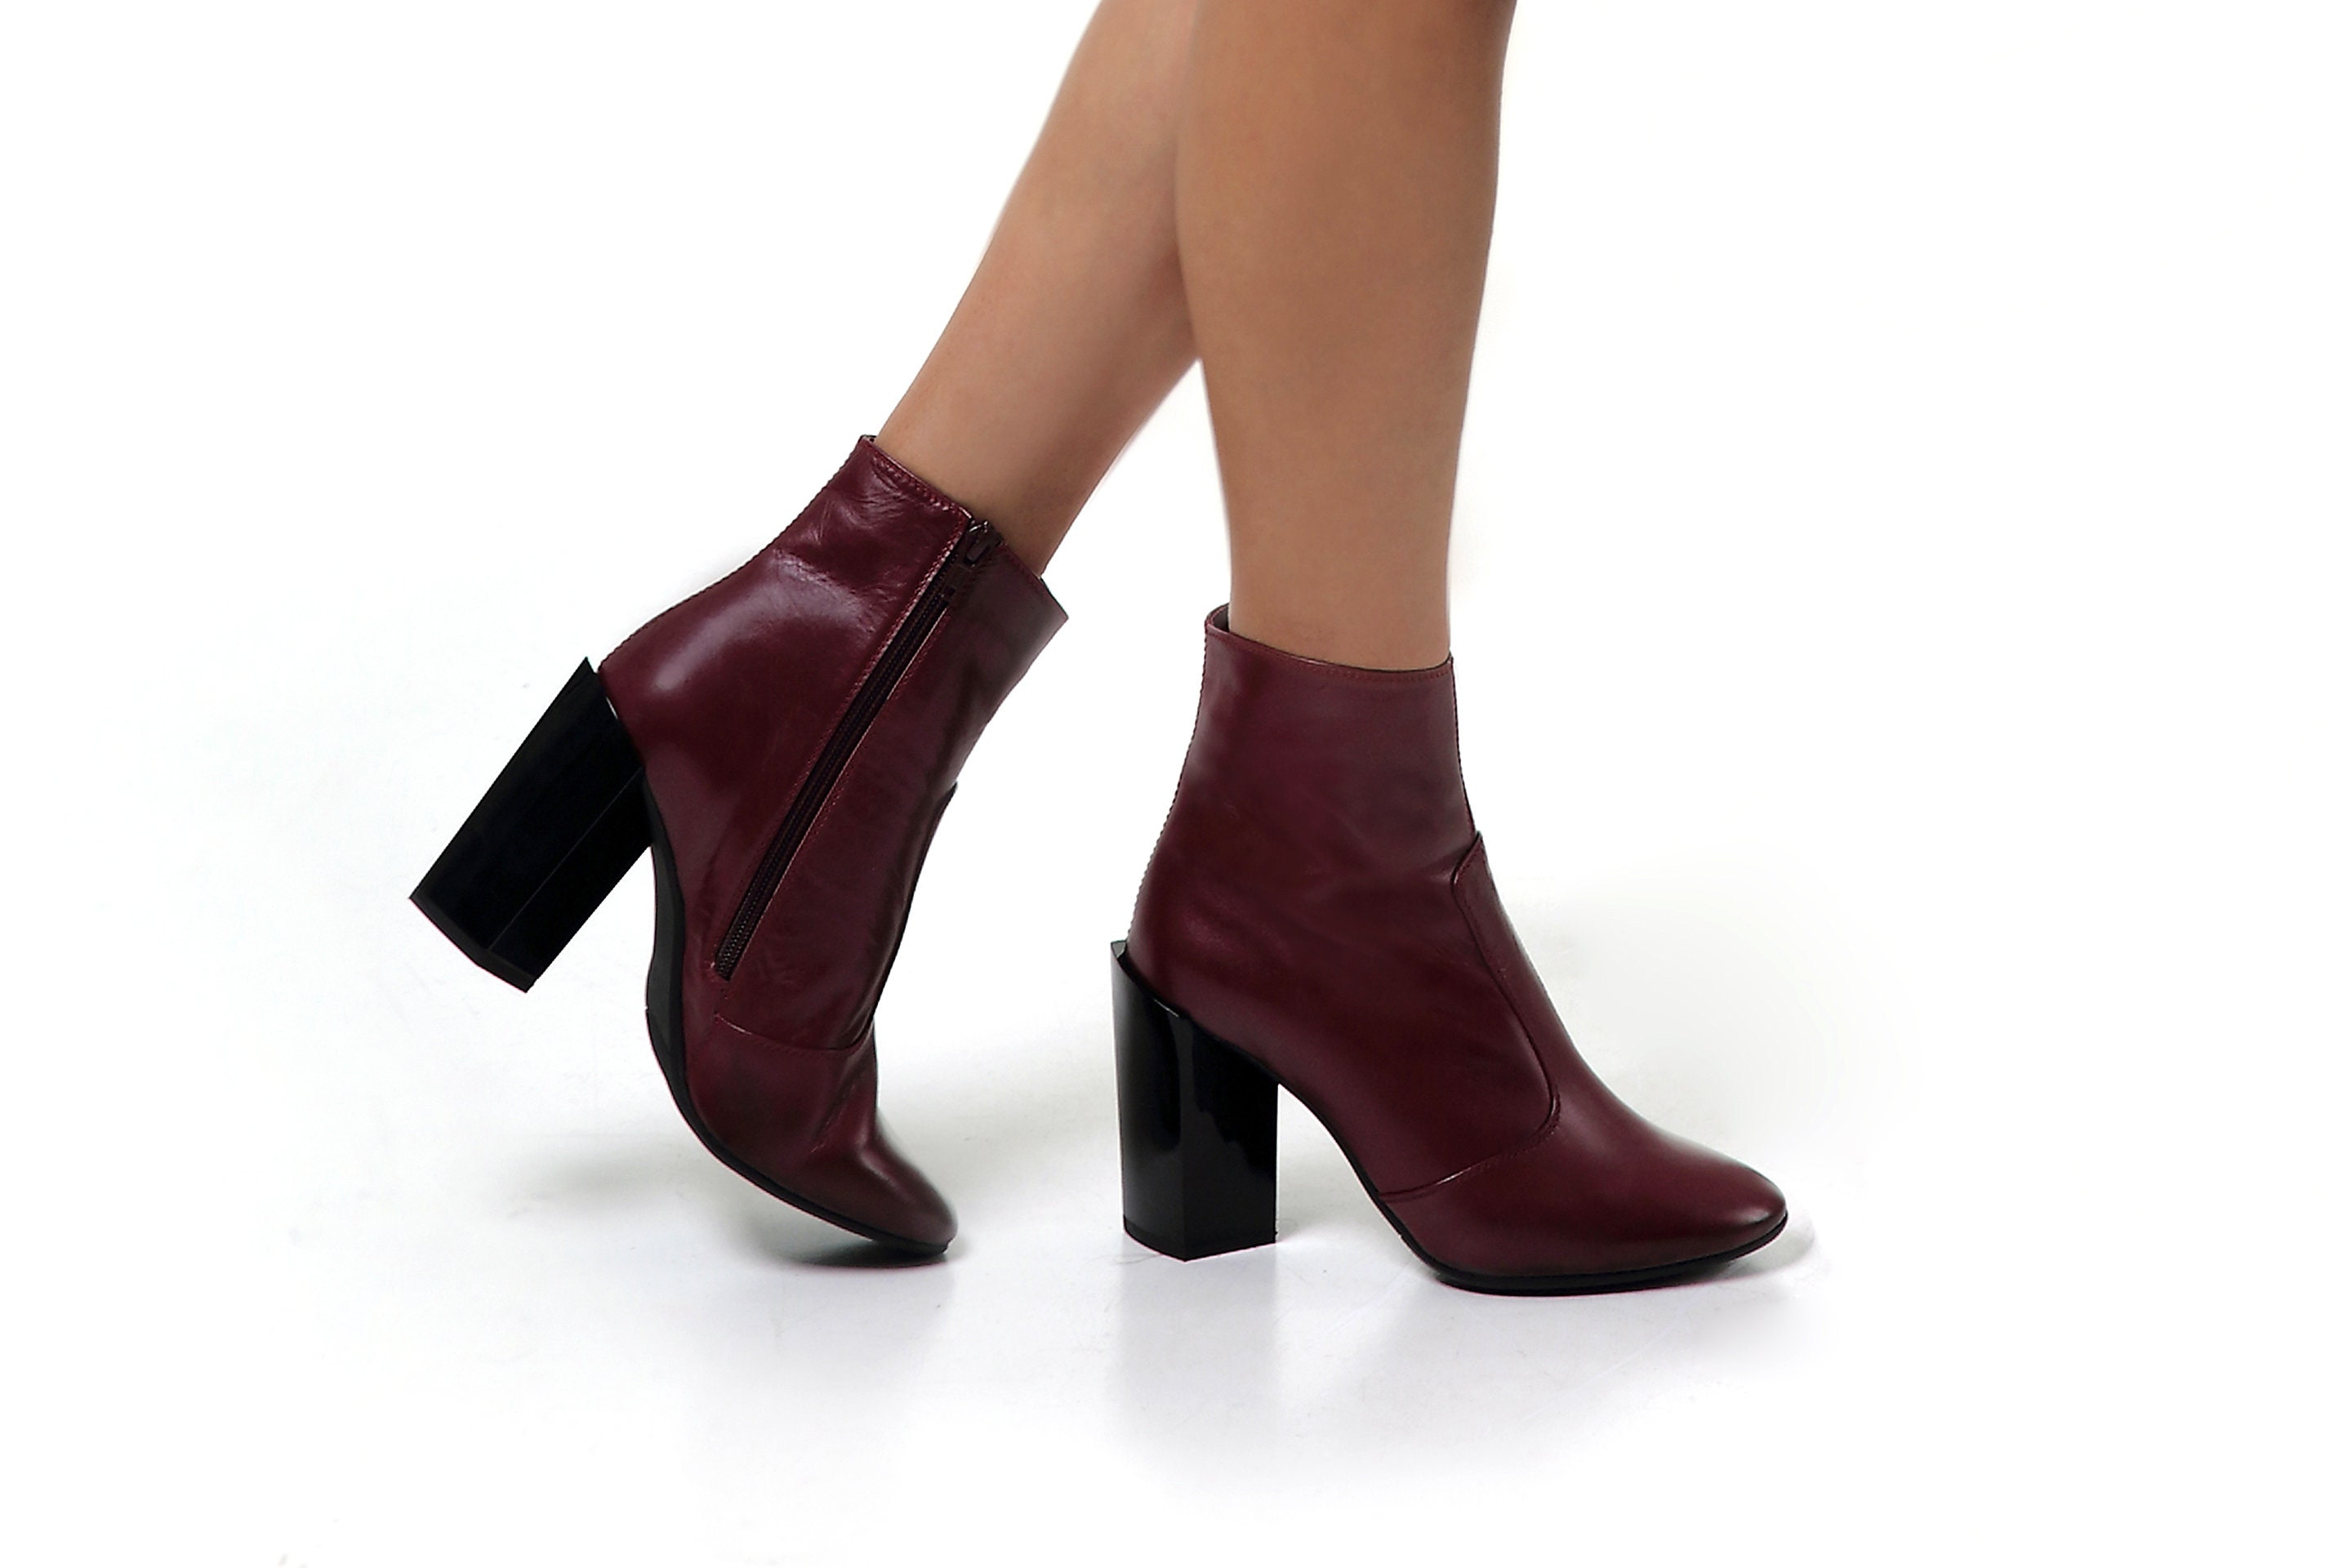 CLASSIQUE Burgundy Heeled Dress Boots in Maat 7.5 Medium Schoenen damesschoenen Laarzen 